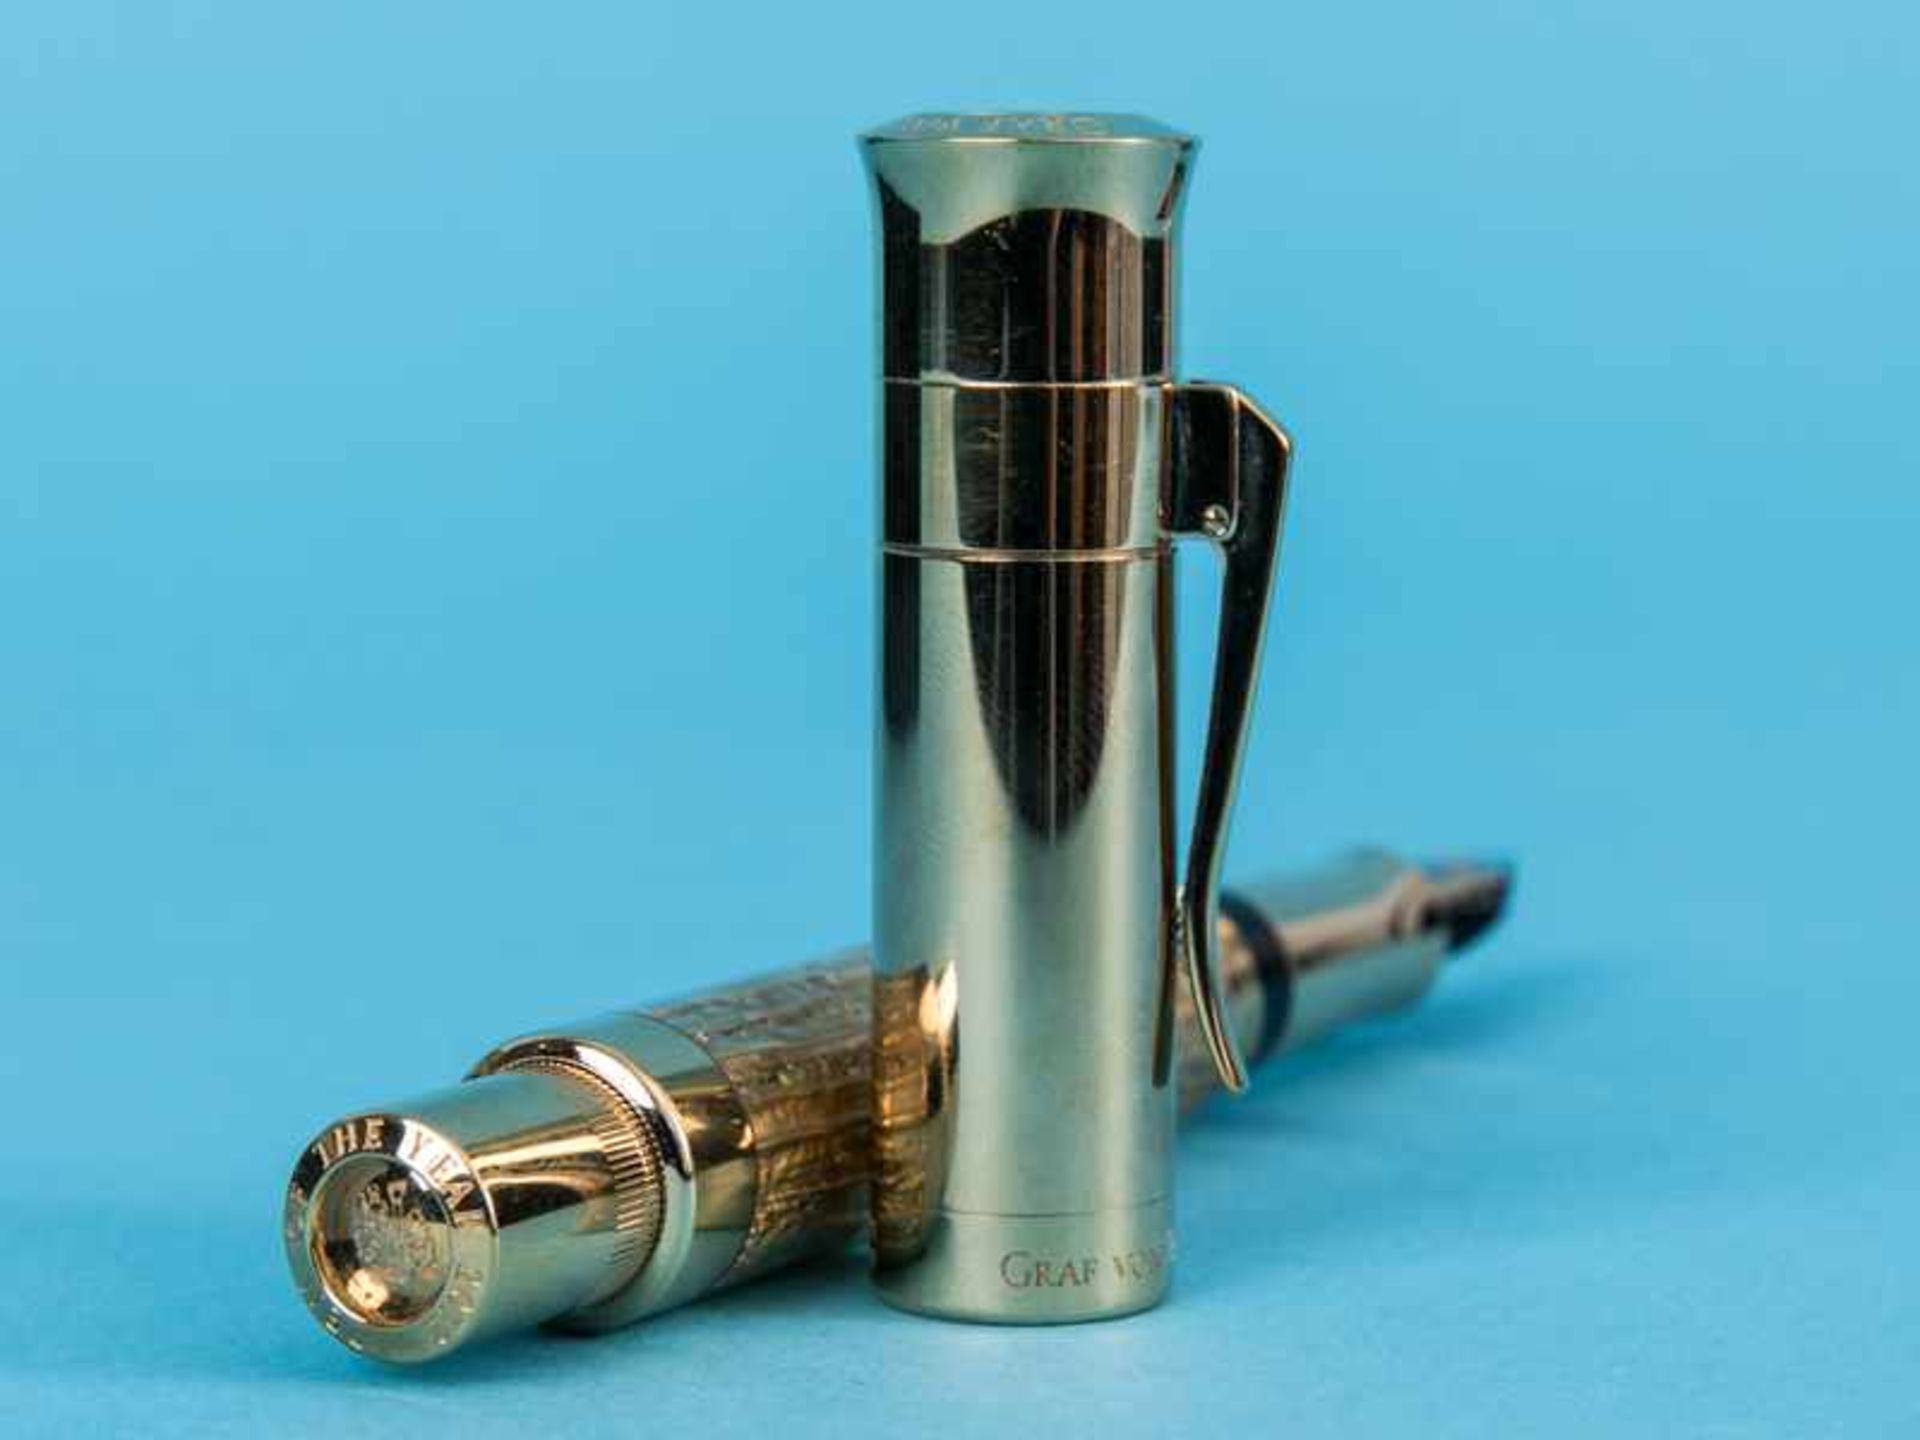 Kolben-Füllfederhalter "Pen of the Year" 2012, Handarbeit aus der Manufaktur Graf von Faber-Castell. - Image 5 of 10